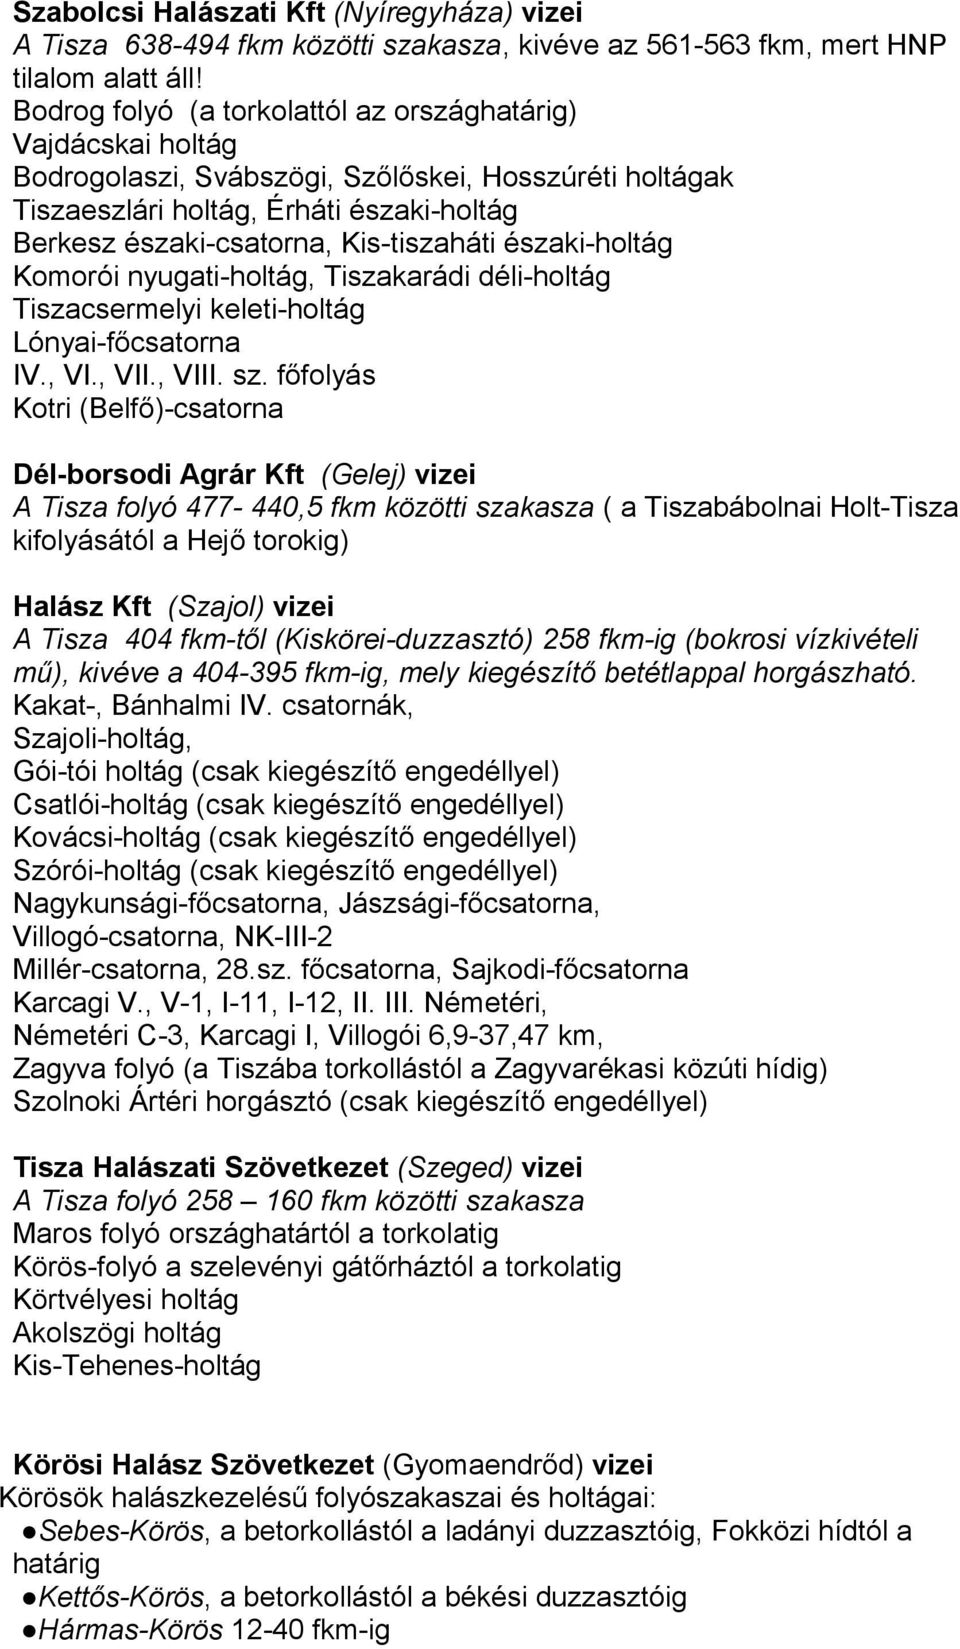 Kis-tiszaháti északi-holtág Komorói nyugati-holtág, Tiszakarádi déli-holtág Tiszacsermelyi keleti-holtág Lónyai-főcsatorna IV., VI., VII., VIII. sz.